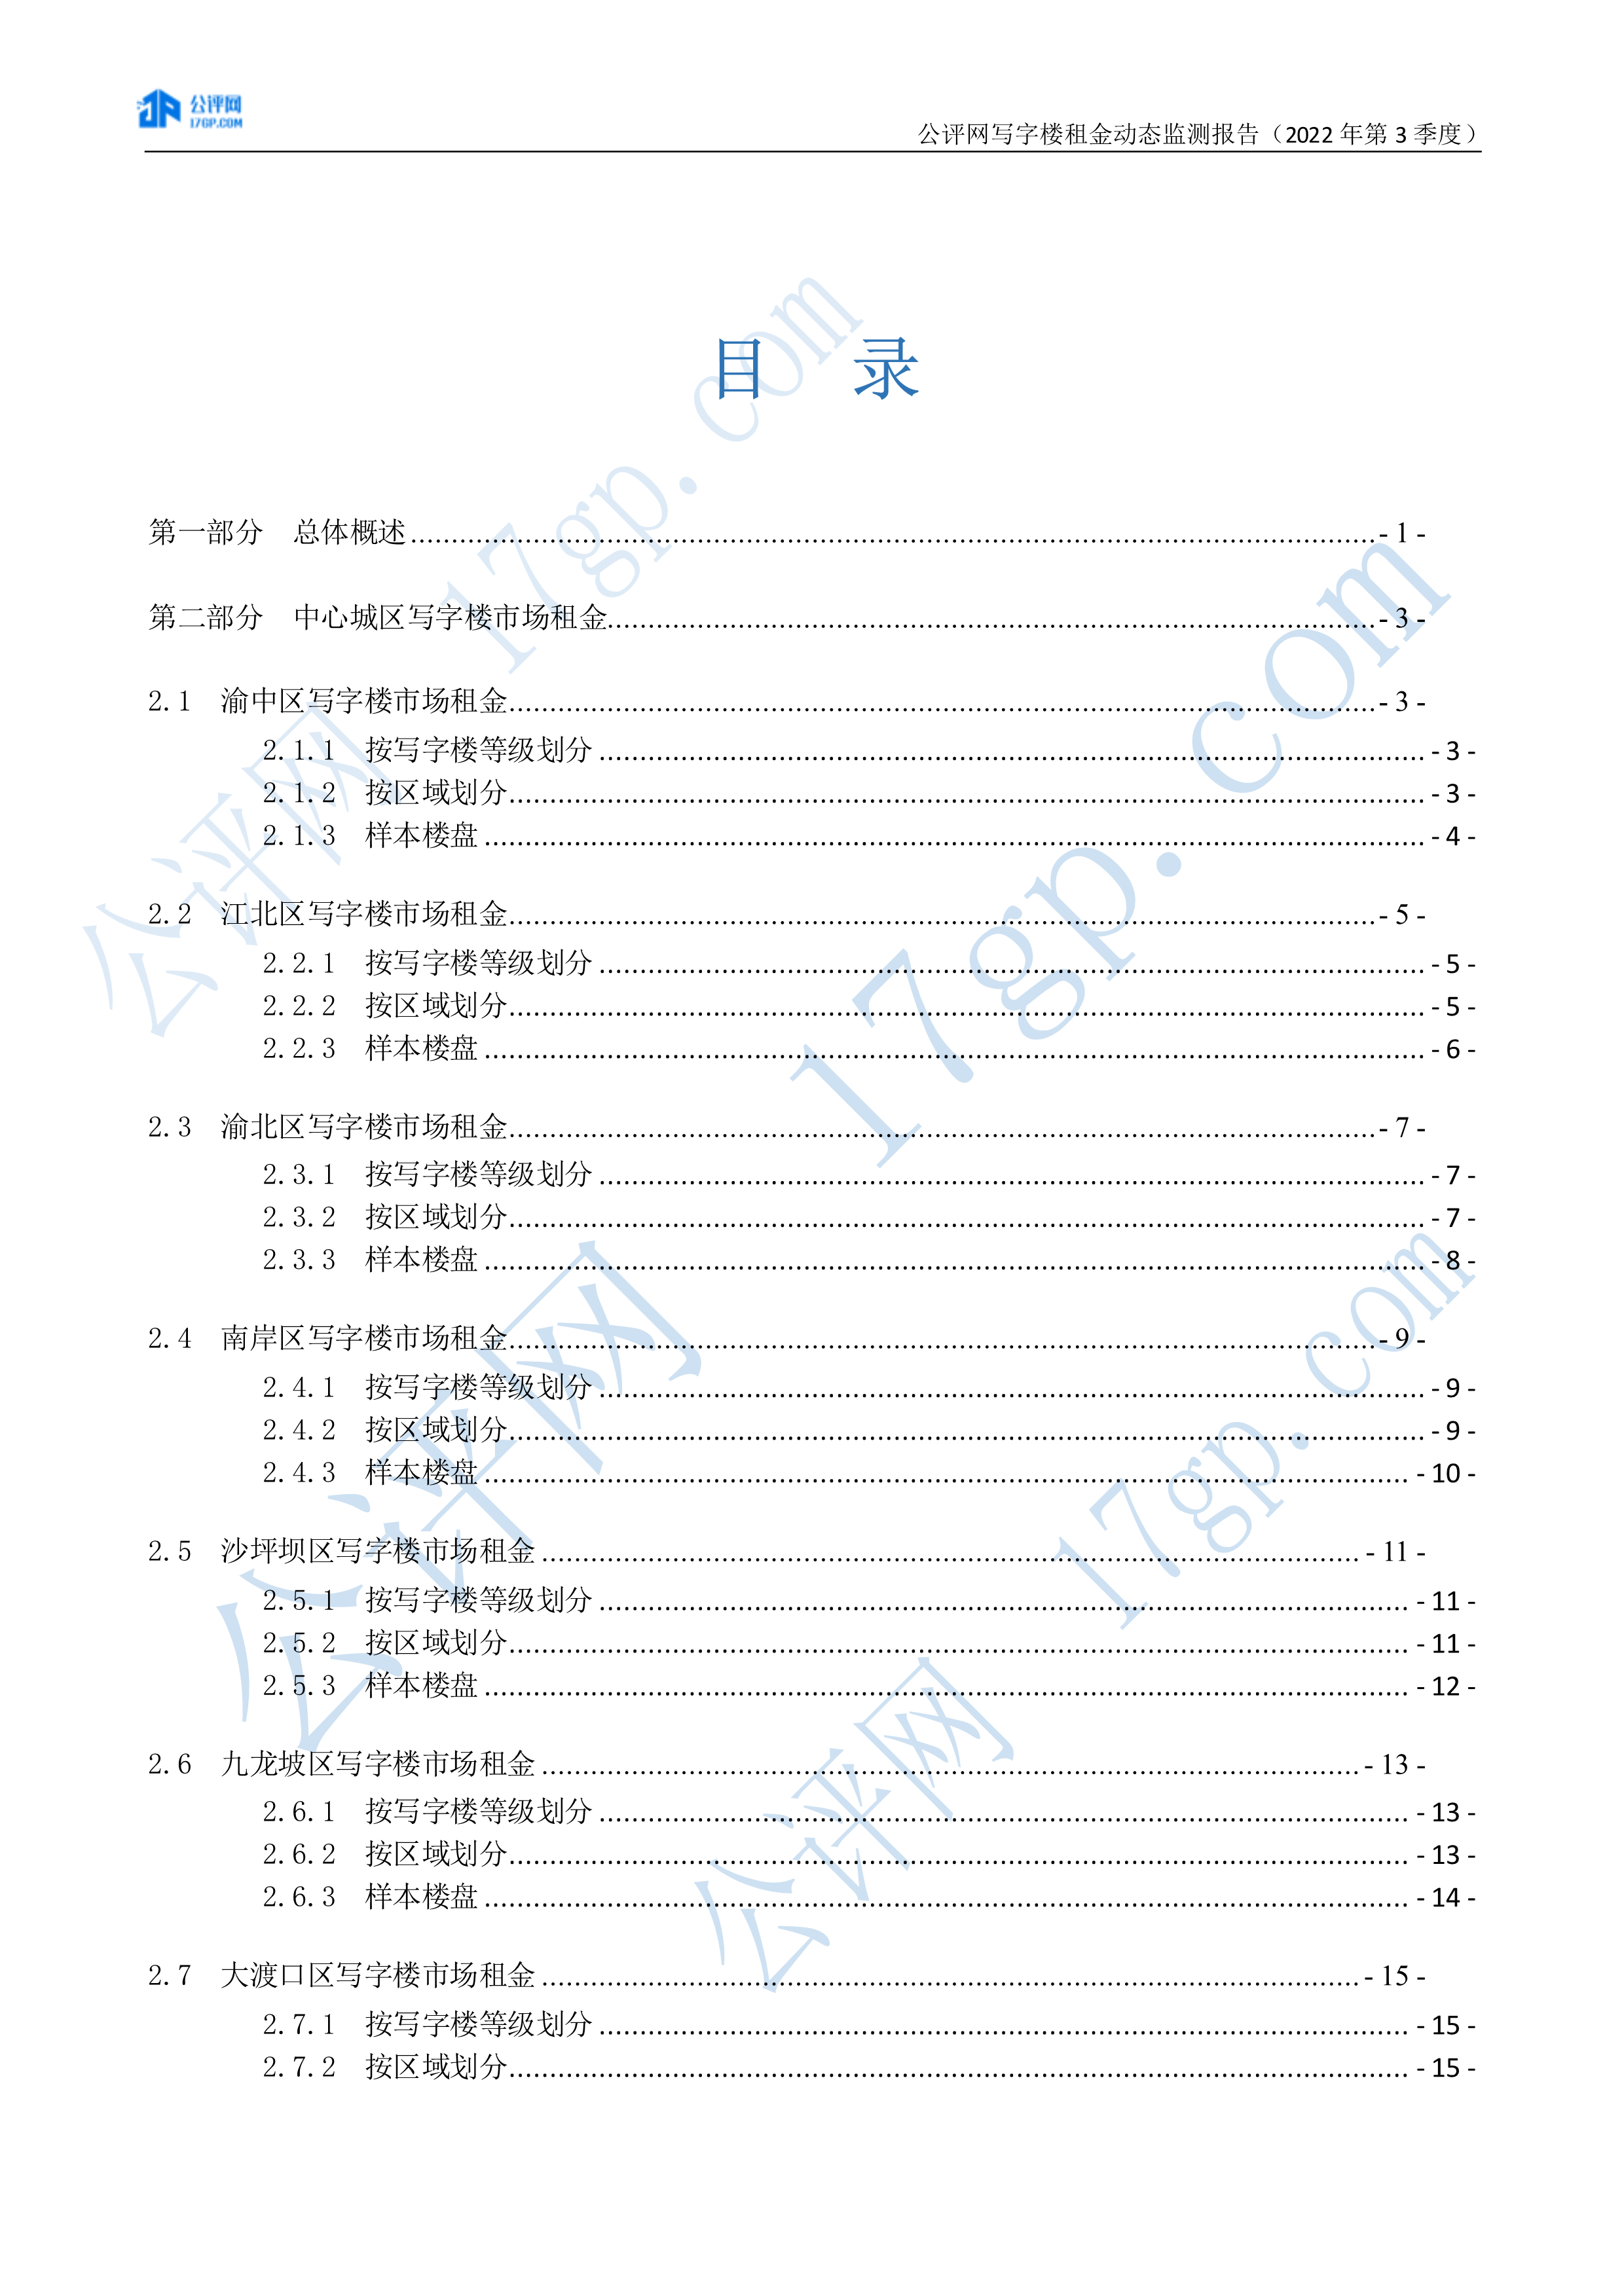 103012435816_02022年3季度-重庆中心城区写字楼市场租金动态监测报告-20221028(1)_2.Png